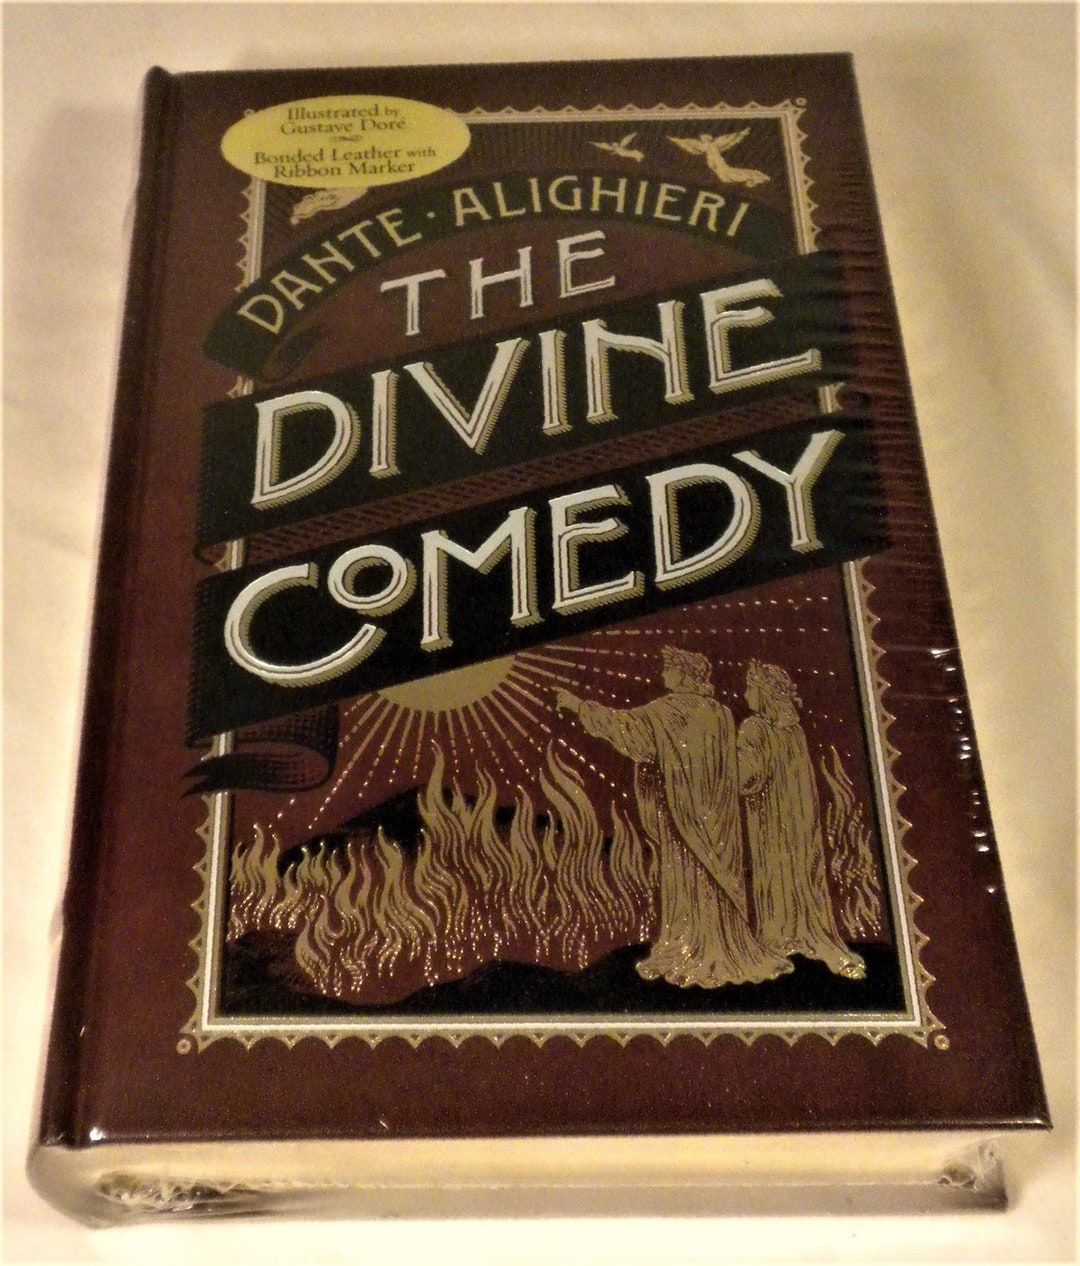 Alighieri　Comedy　Divine　Classic　Dante　Noble　Barnes　The　Etsy